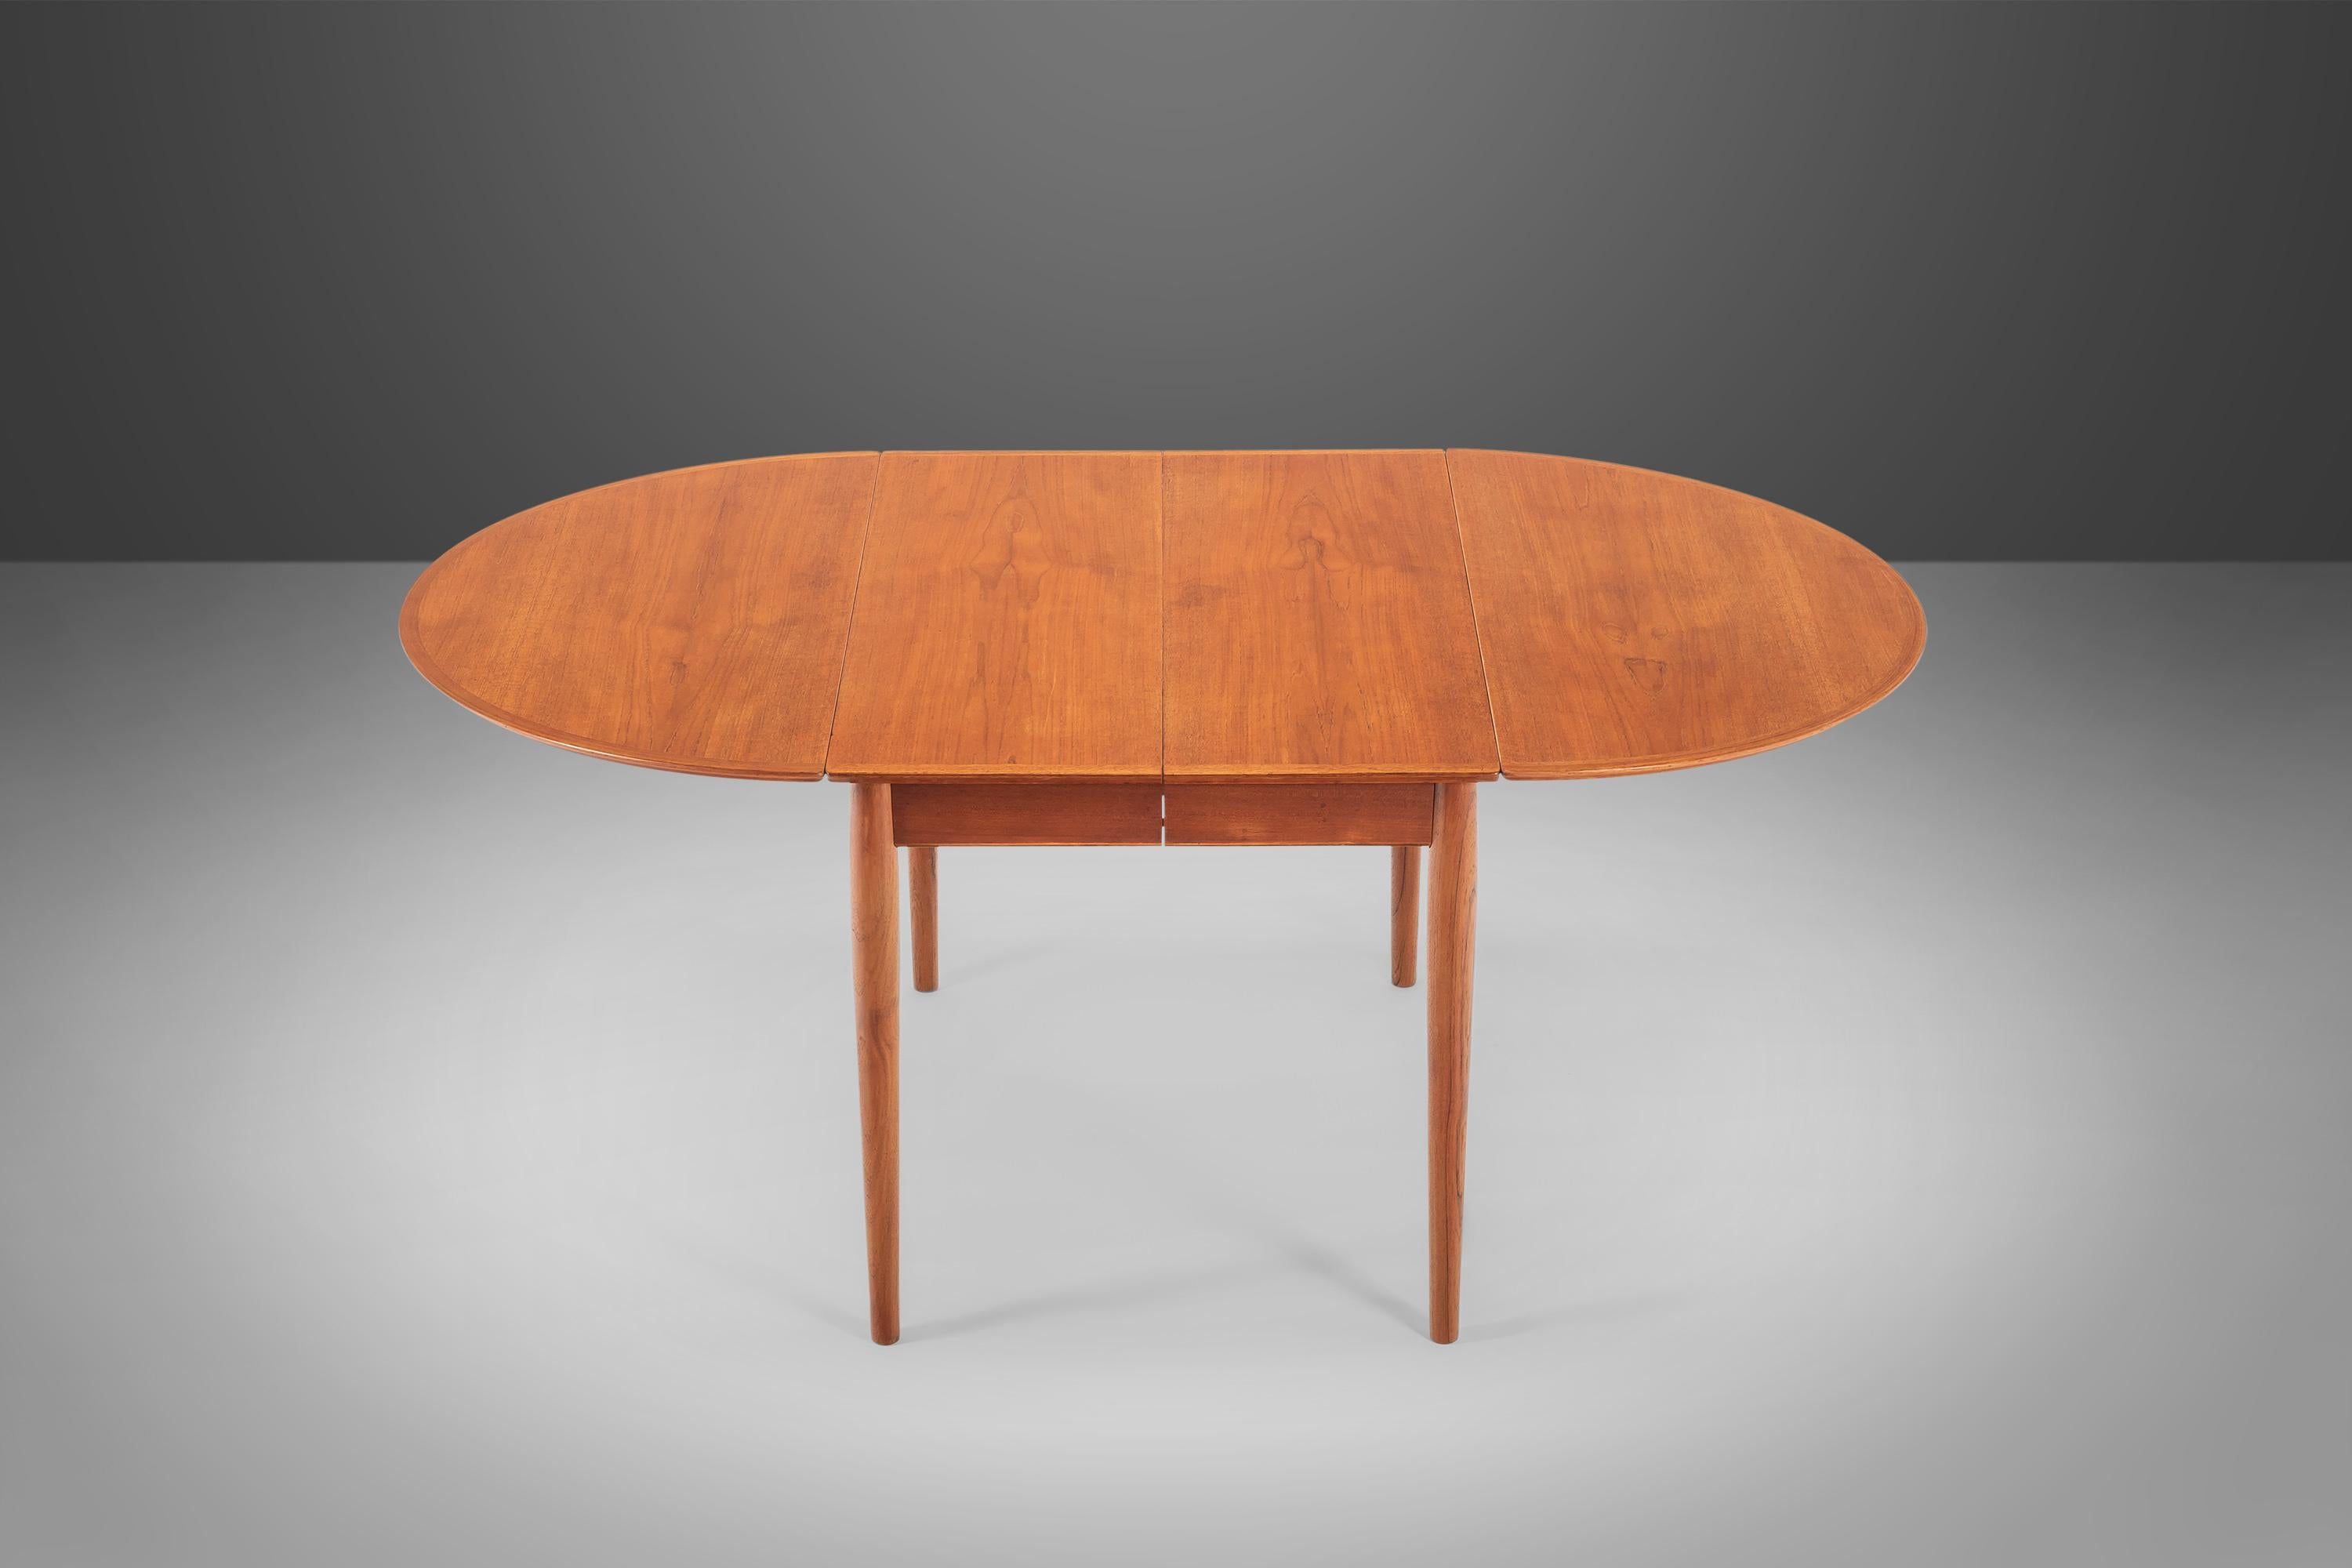 Danish Model 227 Teak Long Extension Dining Table by Arne Vodder for Sibast, c. 1960s For Sale